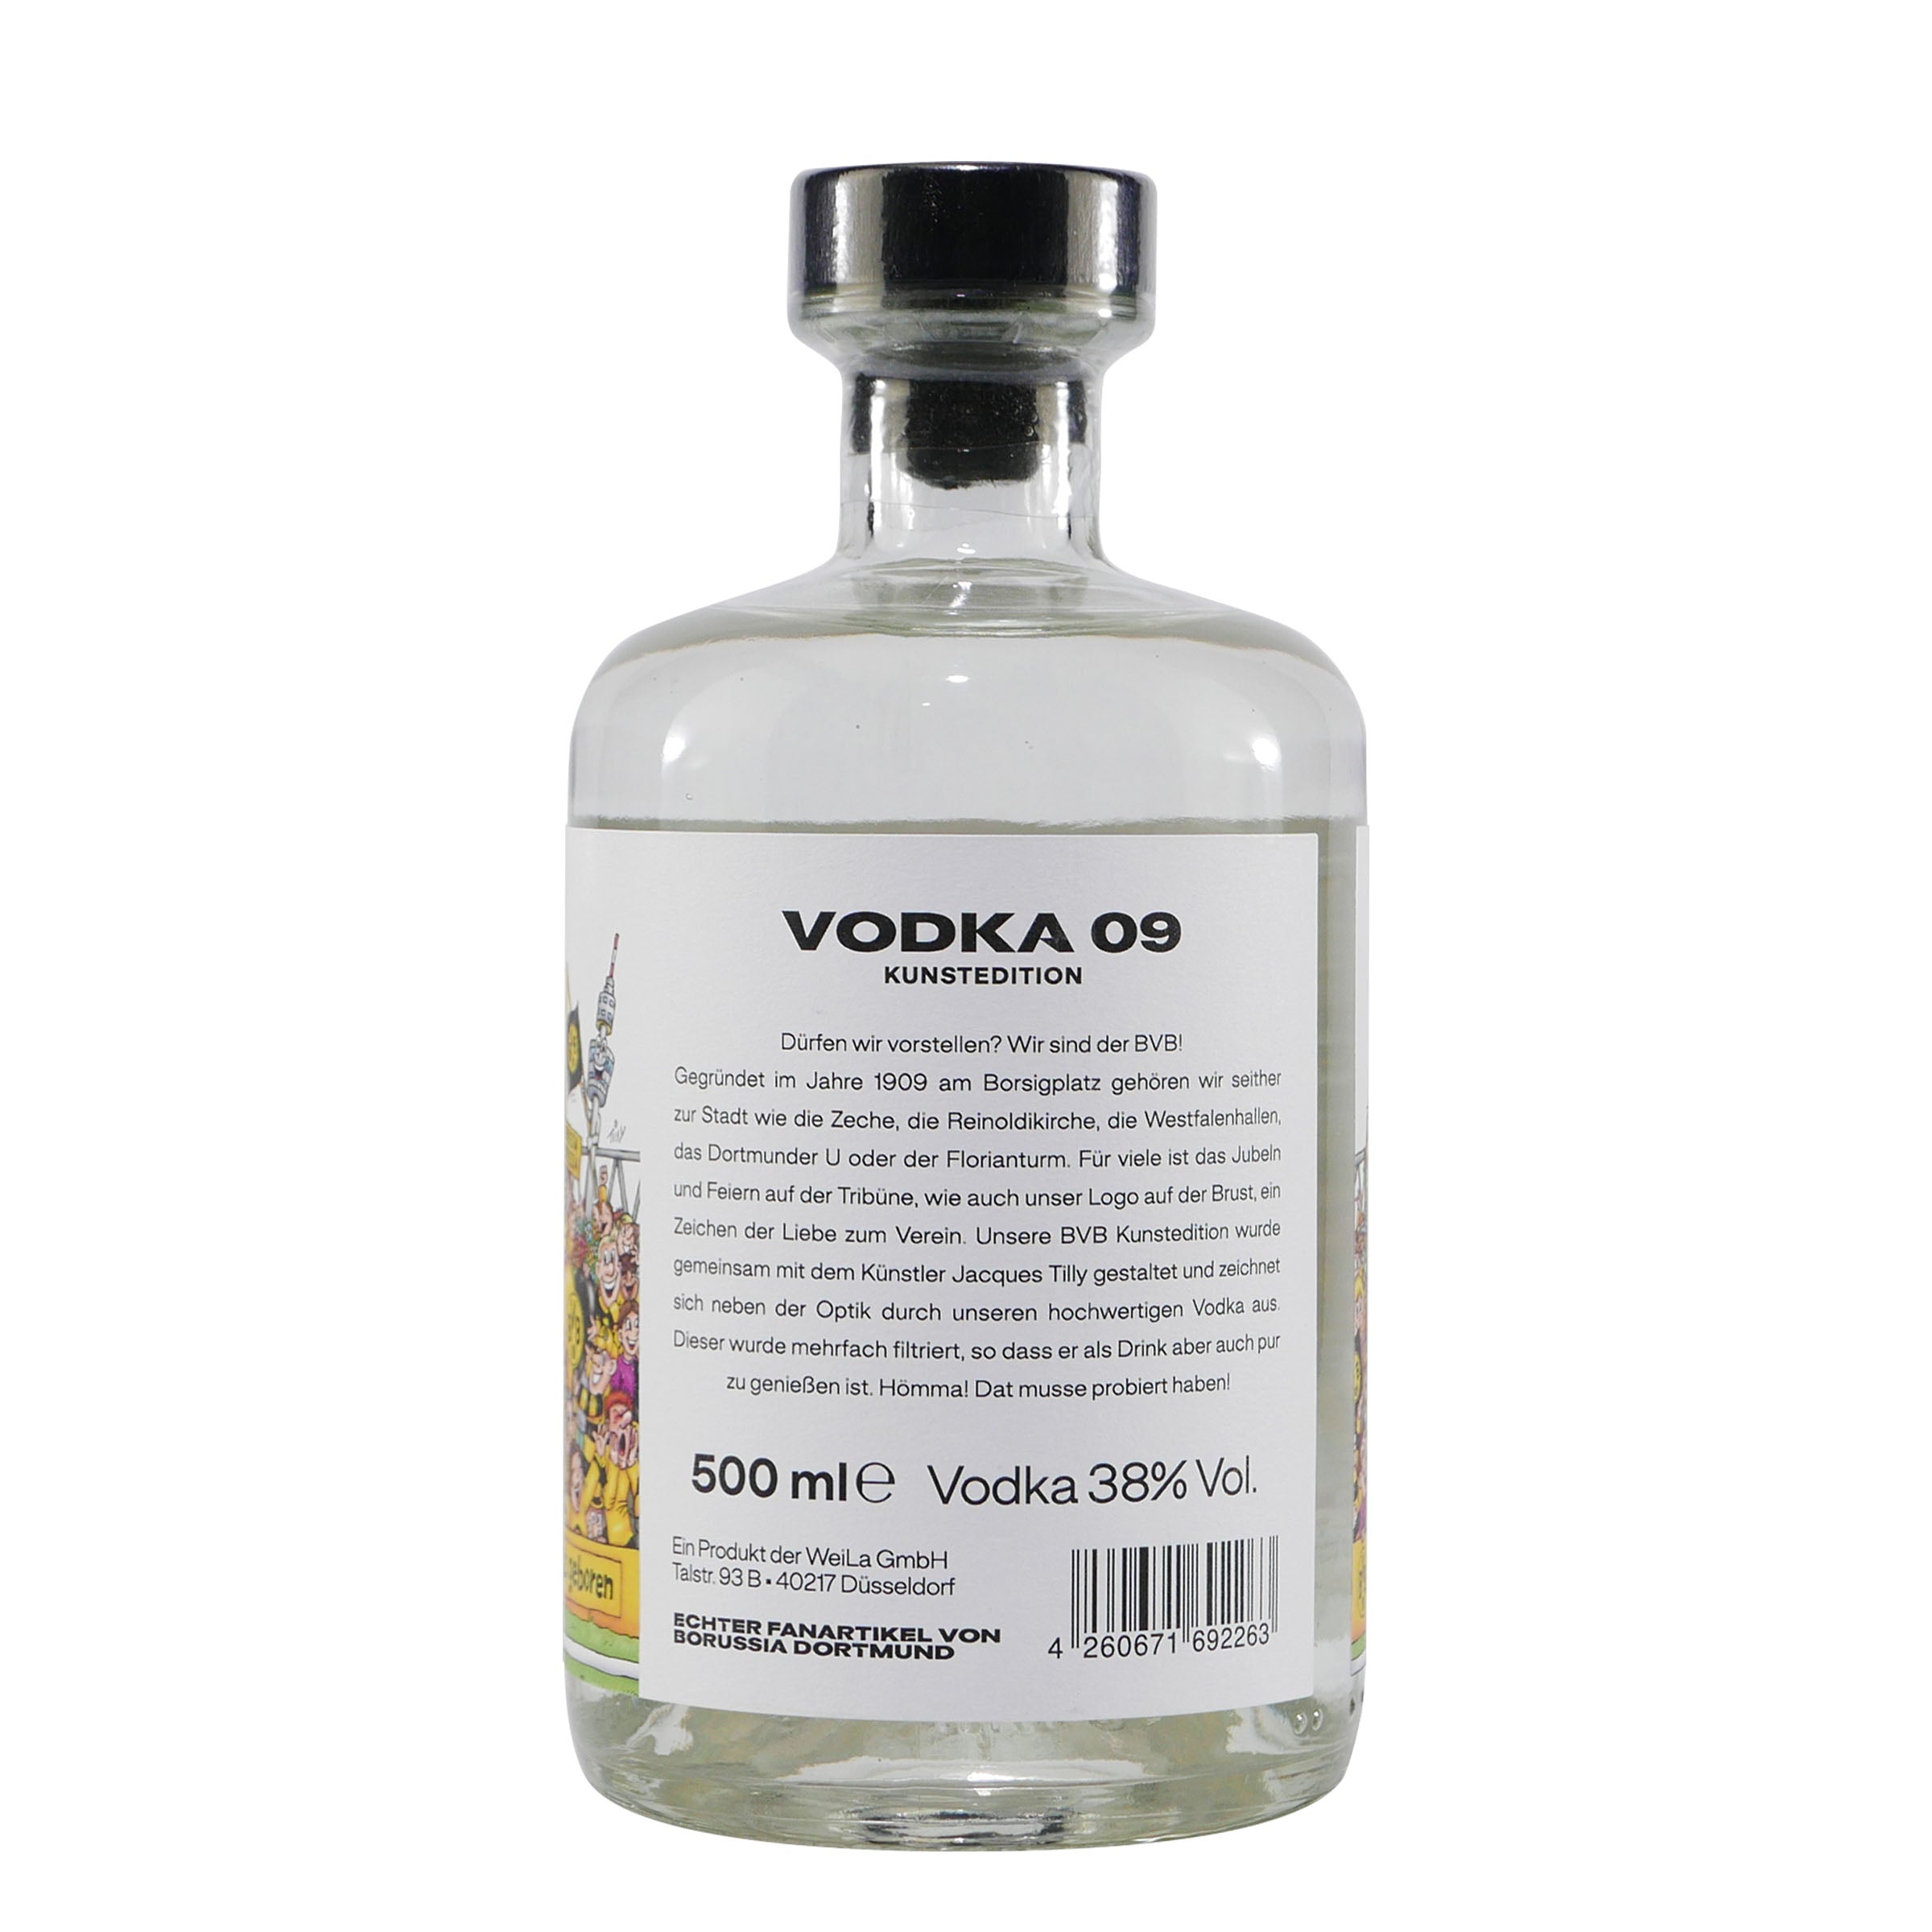 BVB Vodka 09 Kunstedition